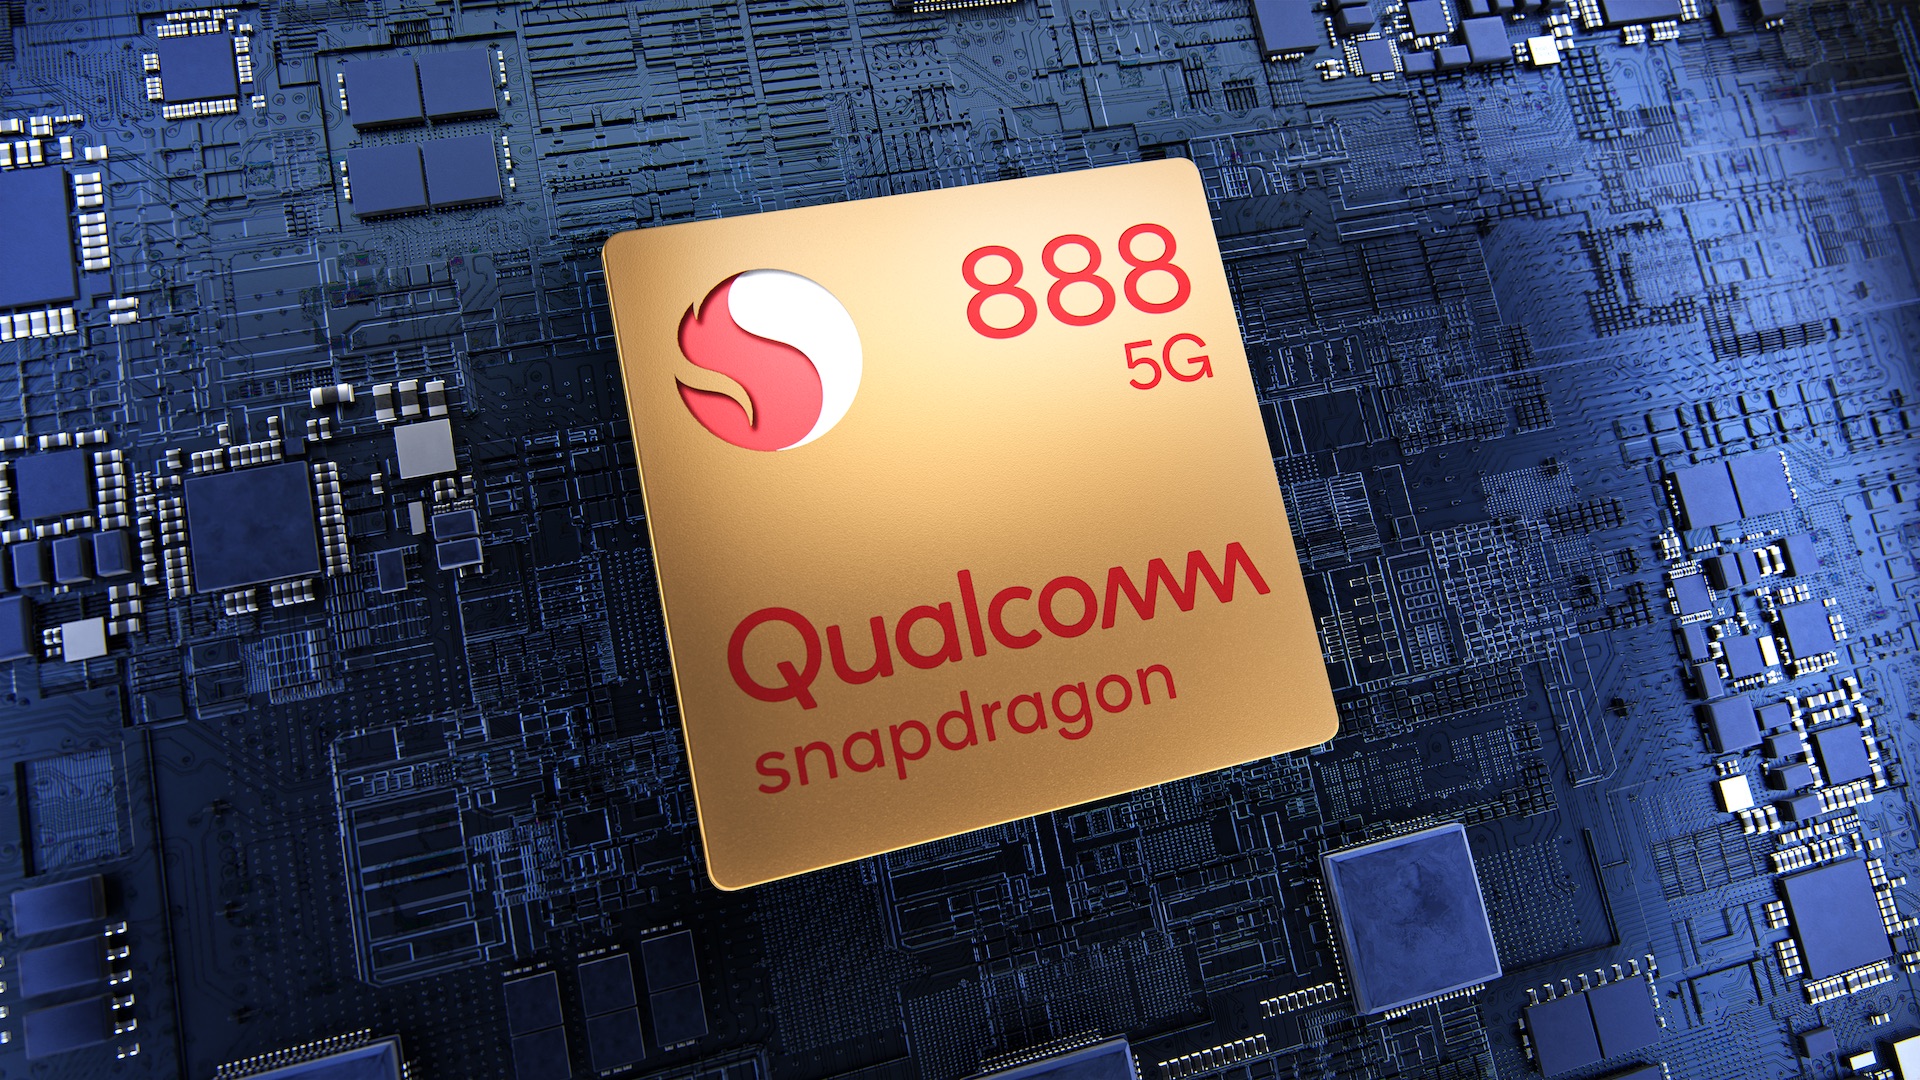 Disse smarttelefonene får ny Snapdragon 888 prosessor